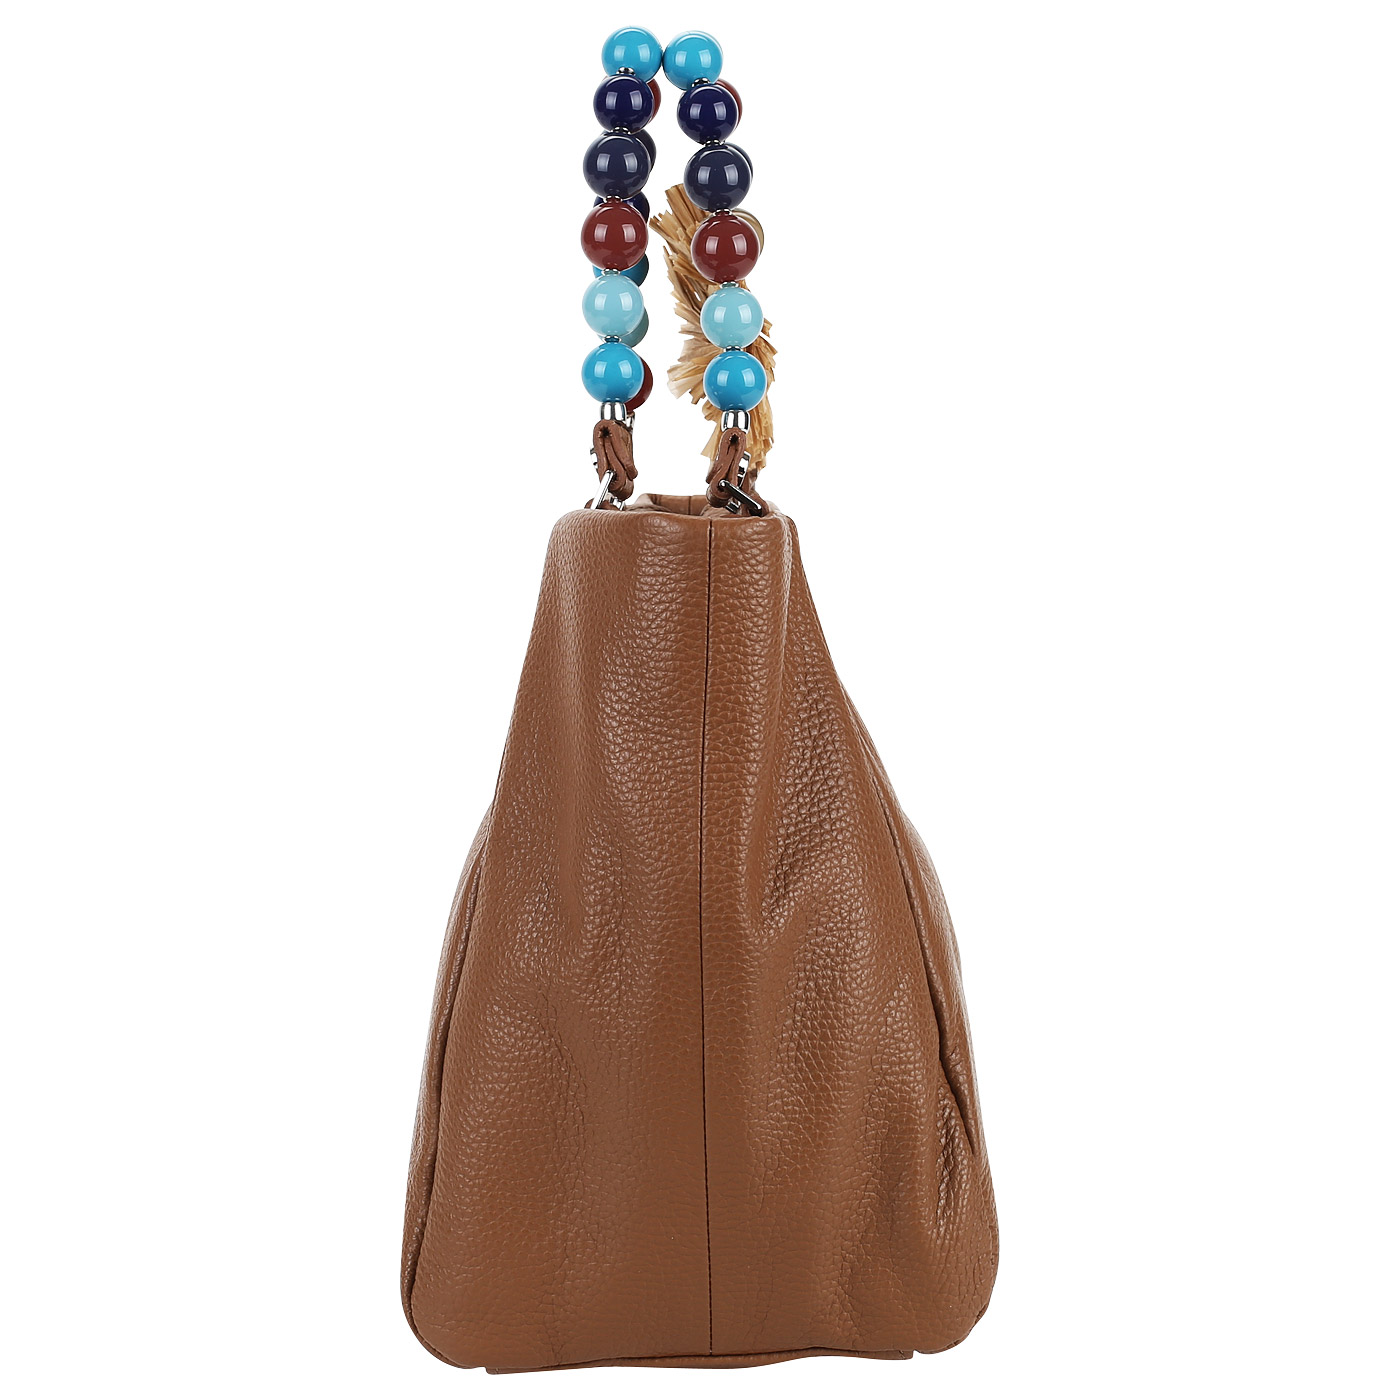 Женская вместительная сумка из натуральной кожи Roberta Gandolfi Jane